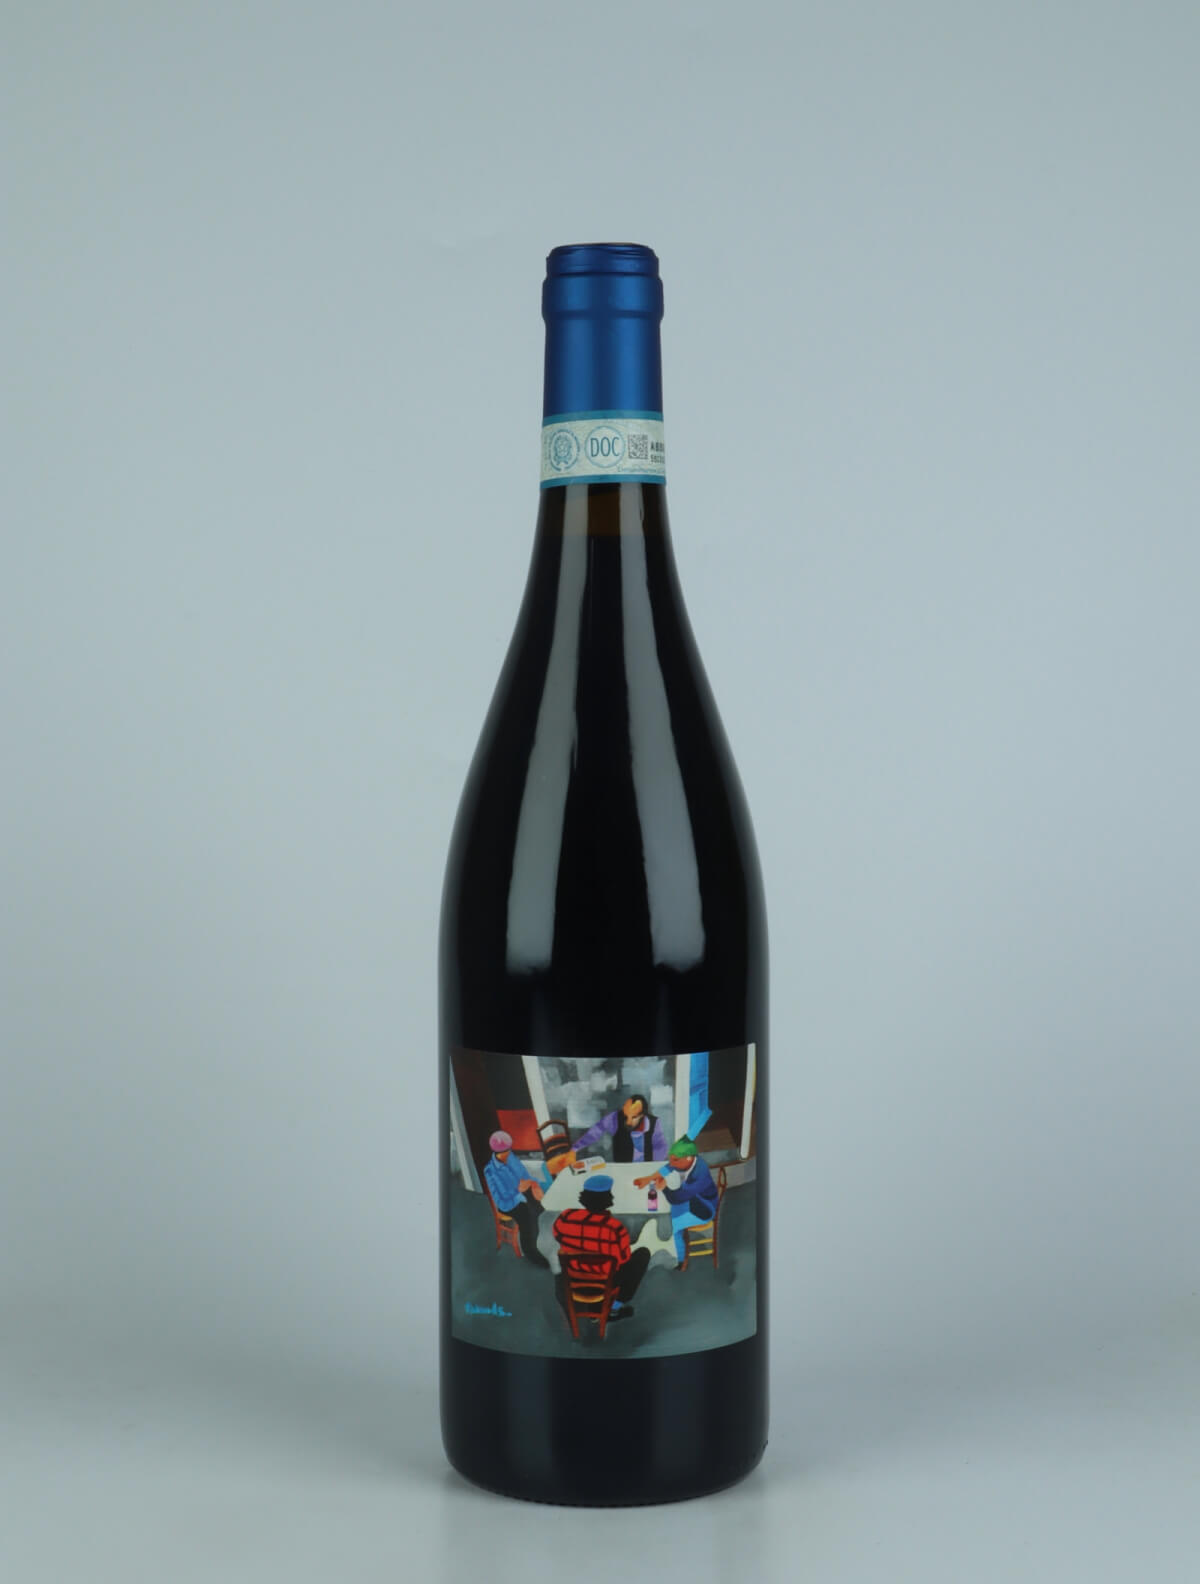 En flaske 2020 Freisa d'Asti Rødvin fra Andrea Scovero, Piemonte i Italien